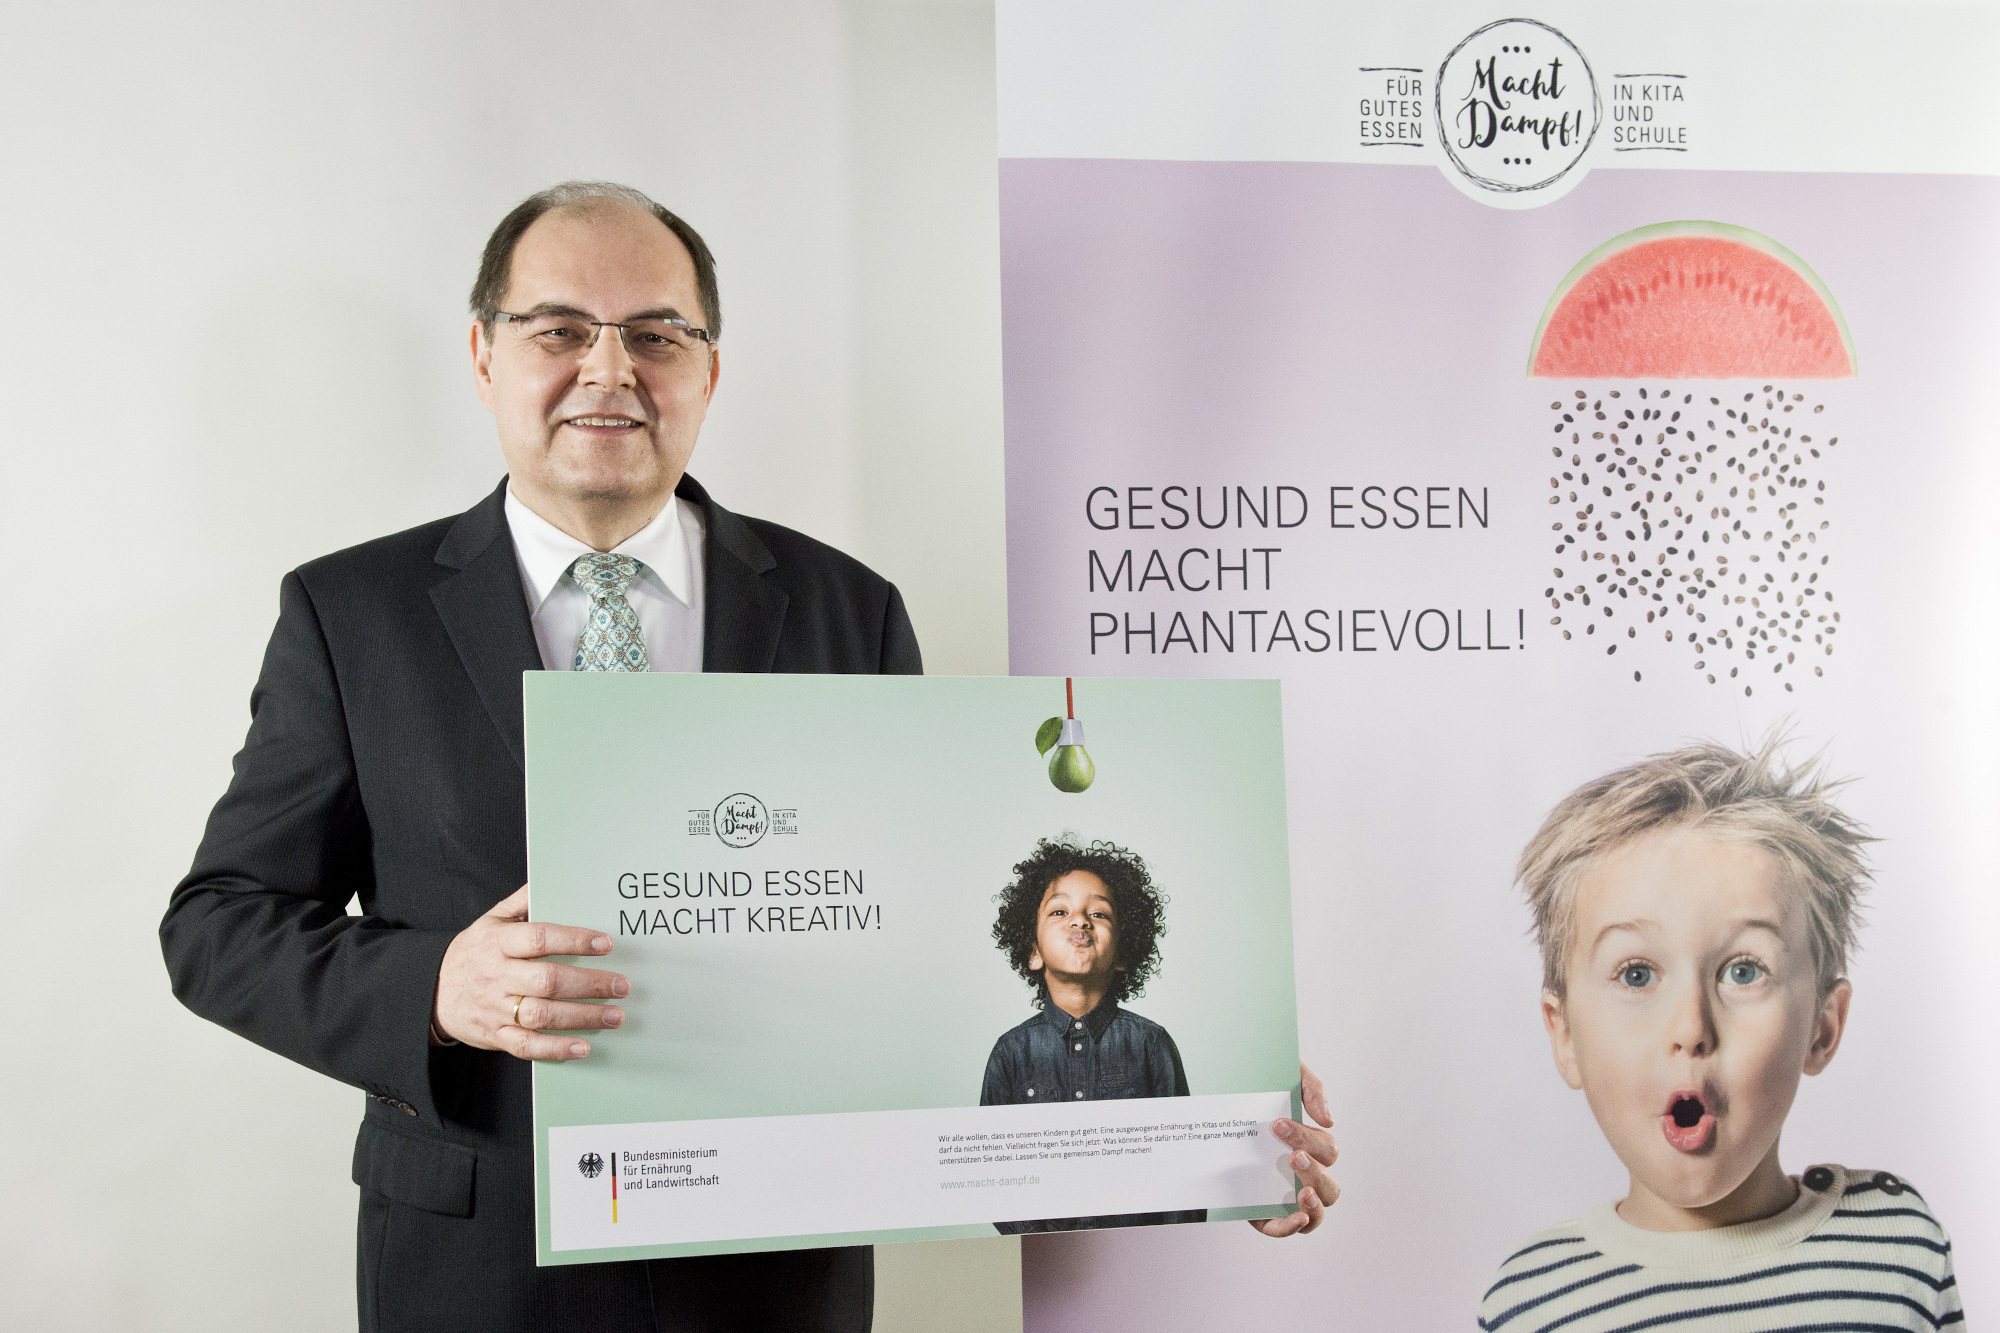 Minister Christian Schmidt stellt seine Kampagne zur Ernährungsbildung vor. Credit: Quelle: BMEL/photothek.net/Michael Gottschalk